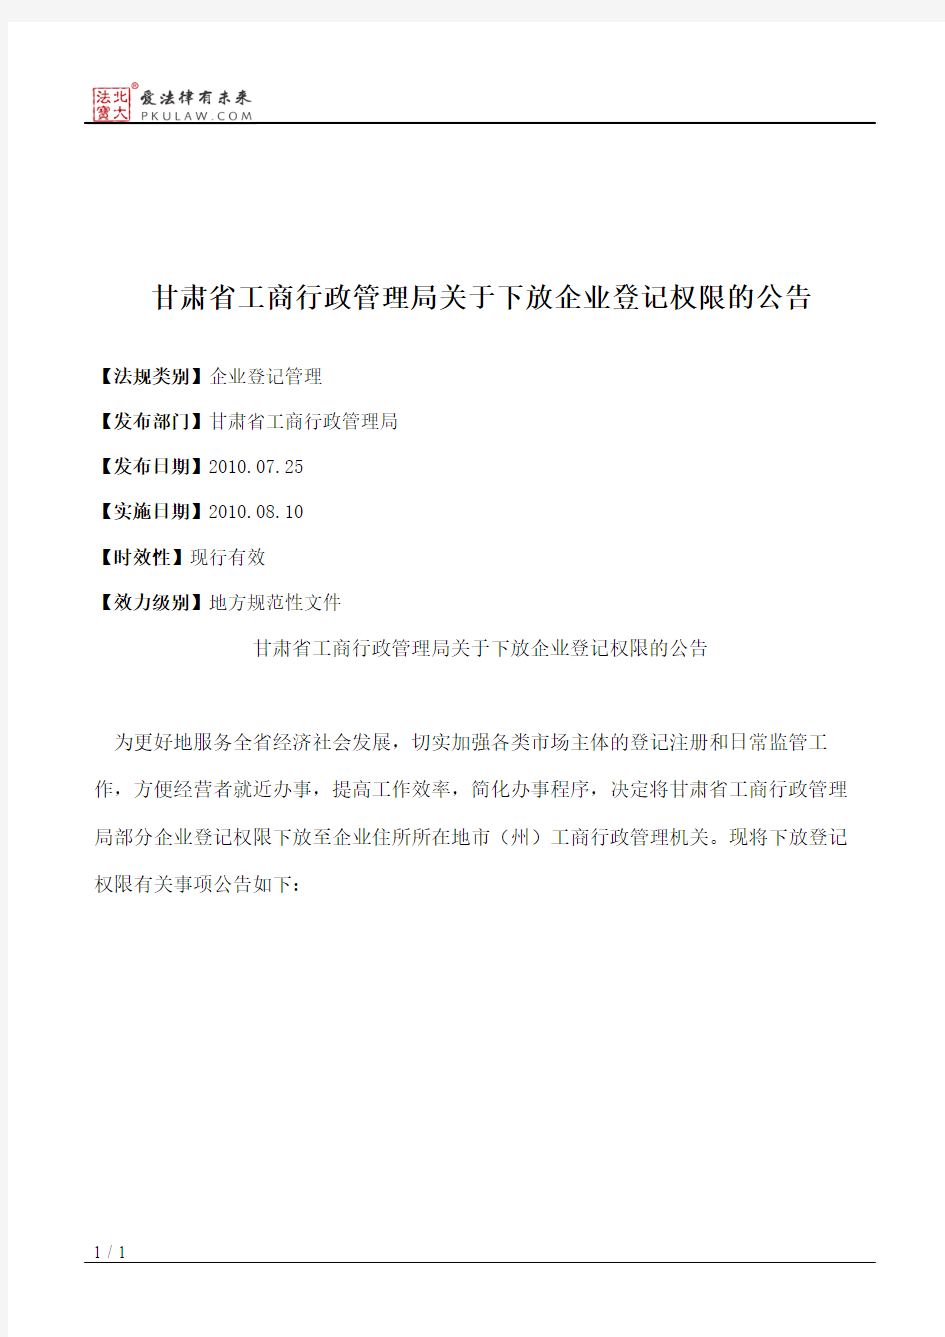 甘肃省工商行政管理局关于下放企业登记权限的公告